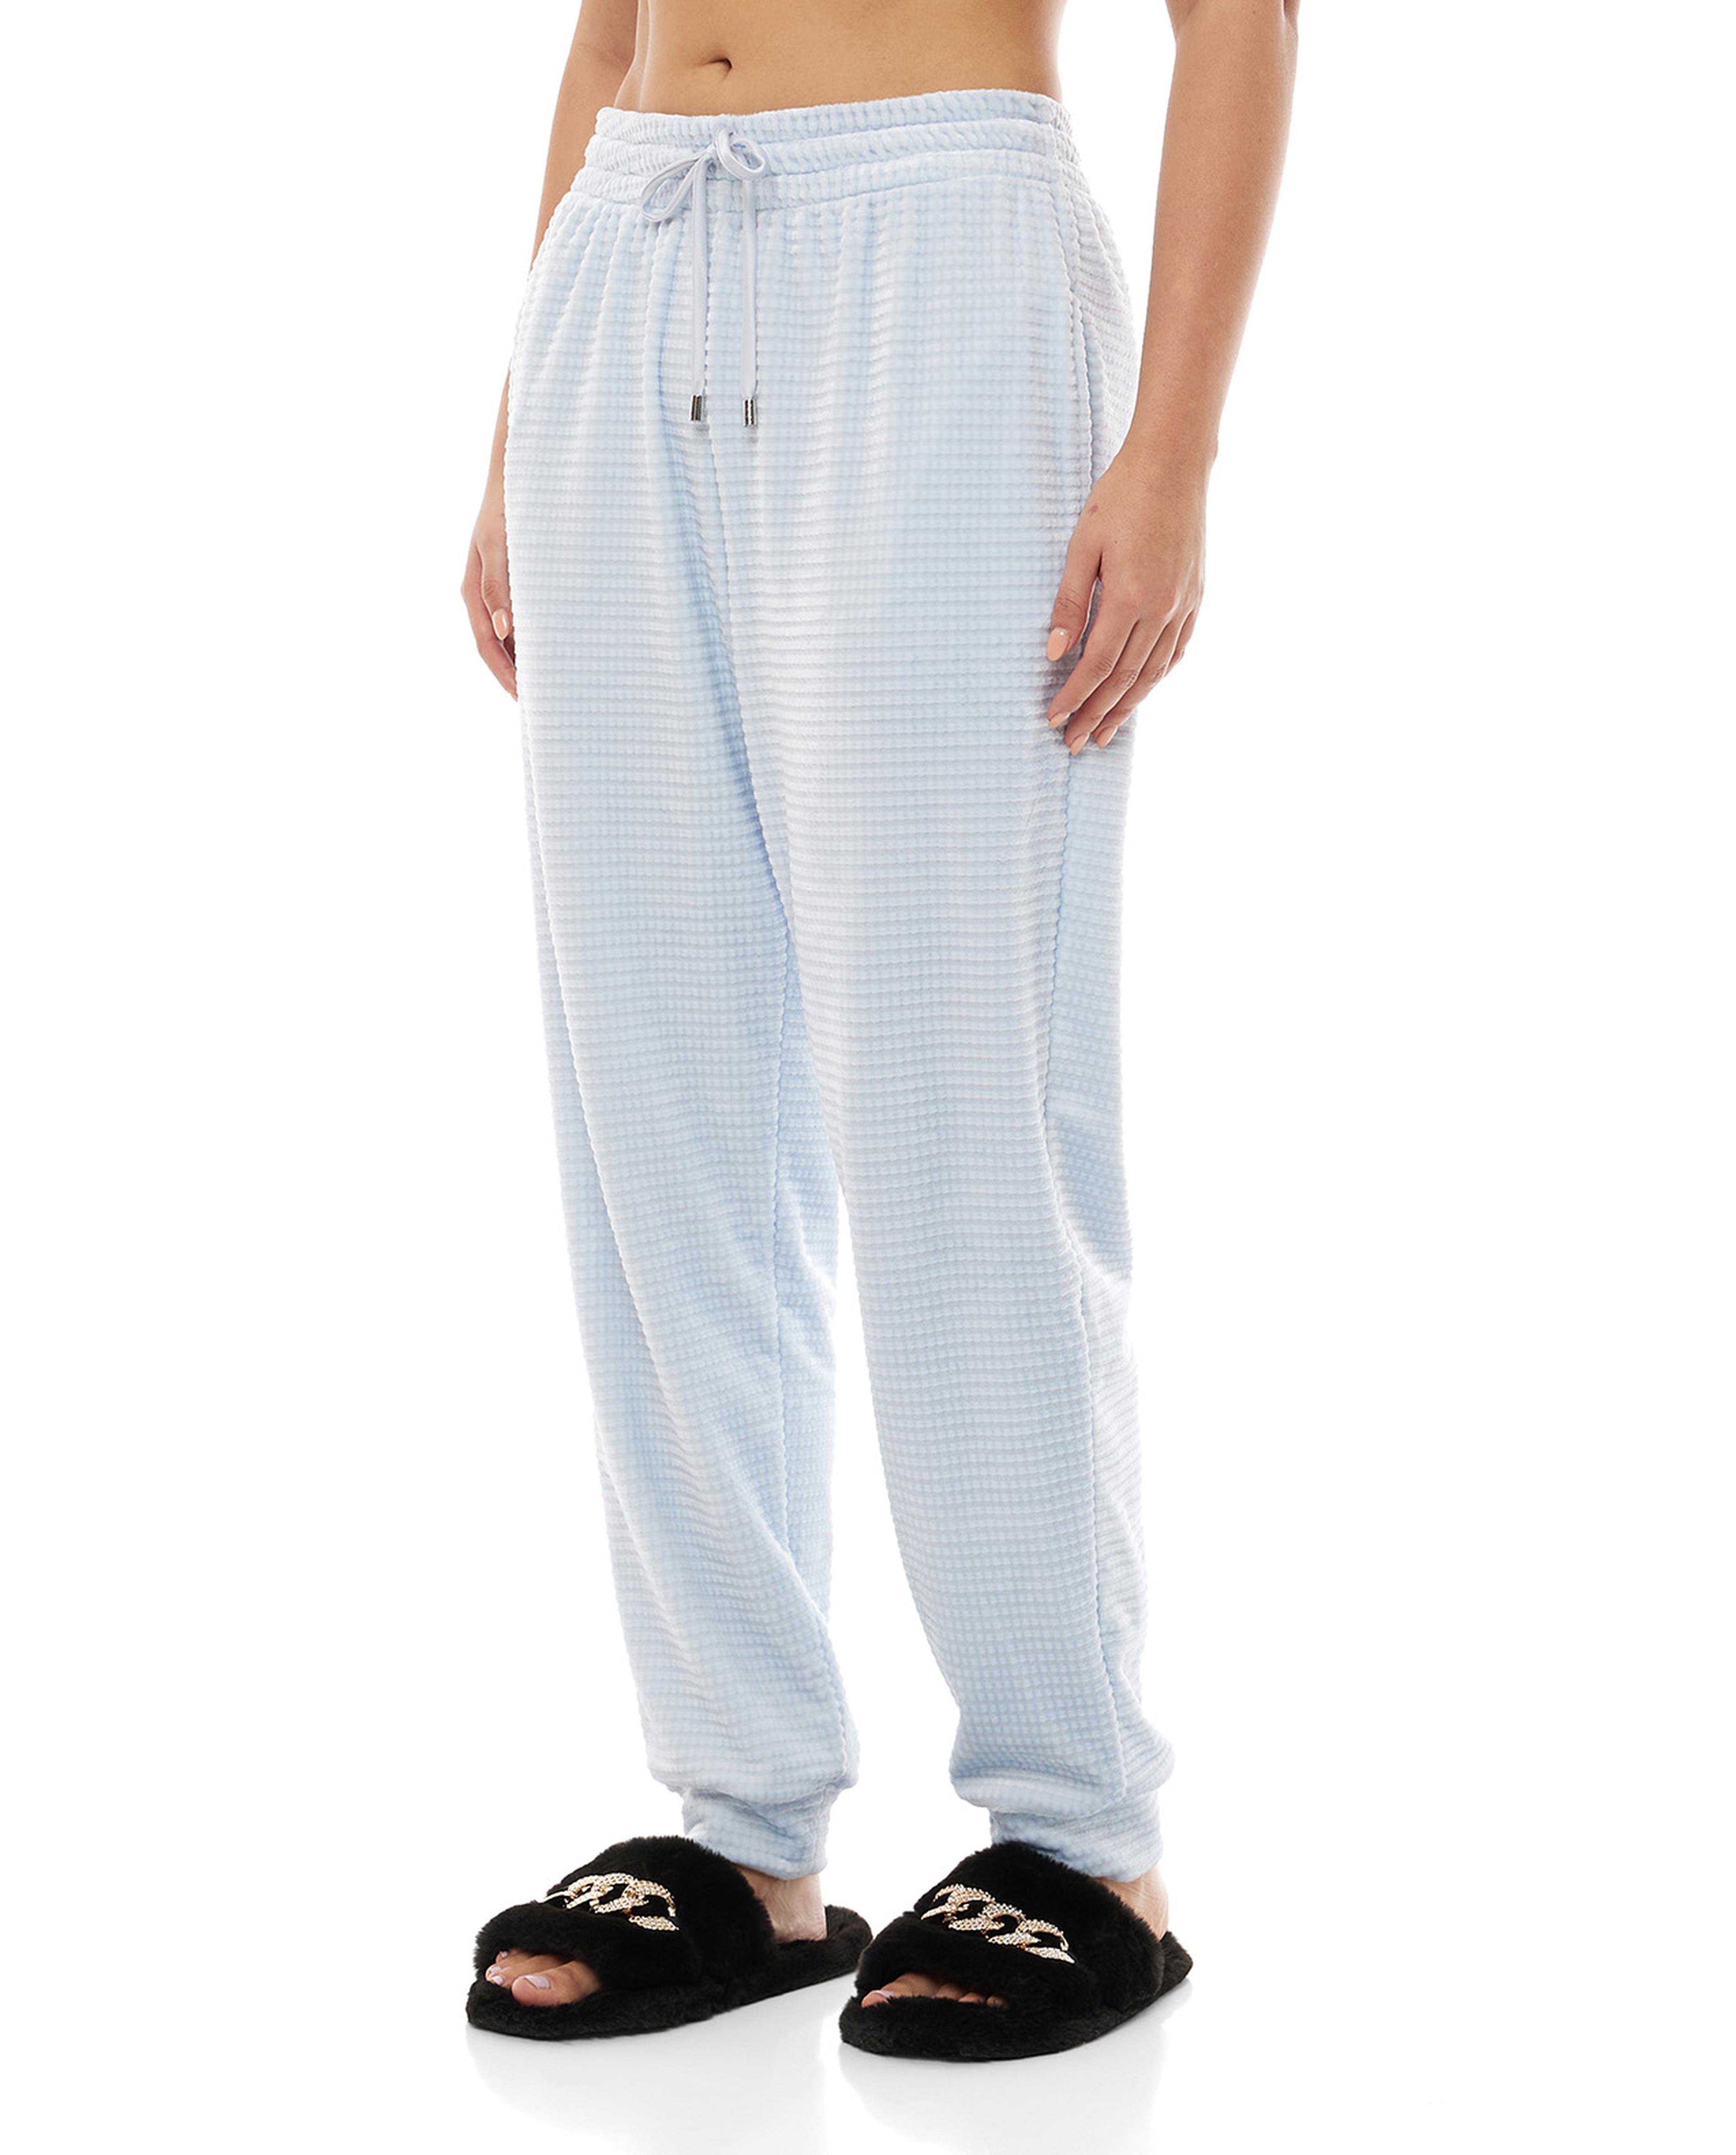 Plush Pajama Bottoms with Drawstring Waist